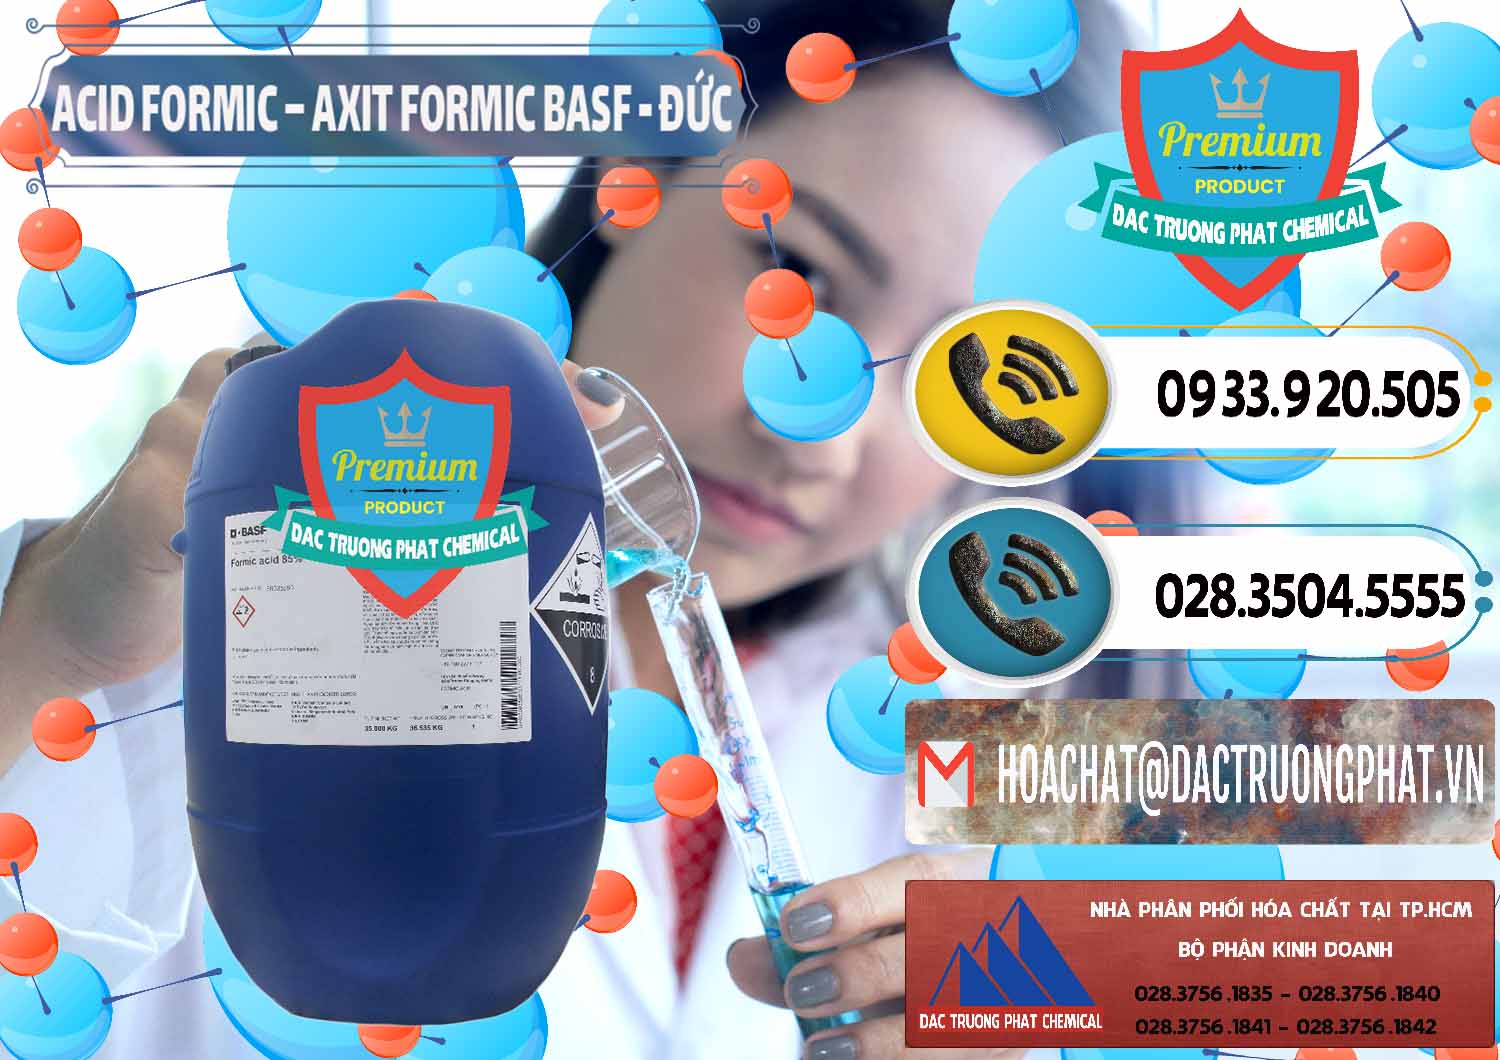 Đơn vị chuyên bán _ phân phối Acid Formic - Axit Formic BASF Đức Germany - 0028 - Công ty nhập khẩu ( phân phối ) hóa chất tại TP.HCM - hoachatdetnhuom.vn